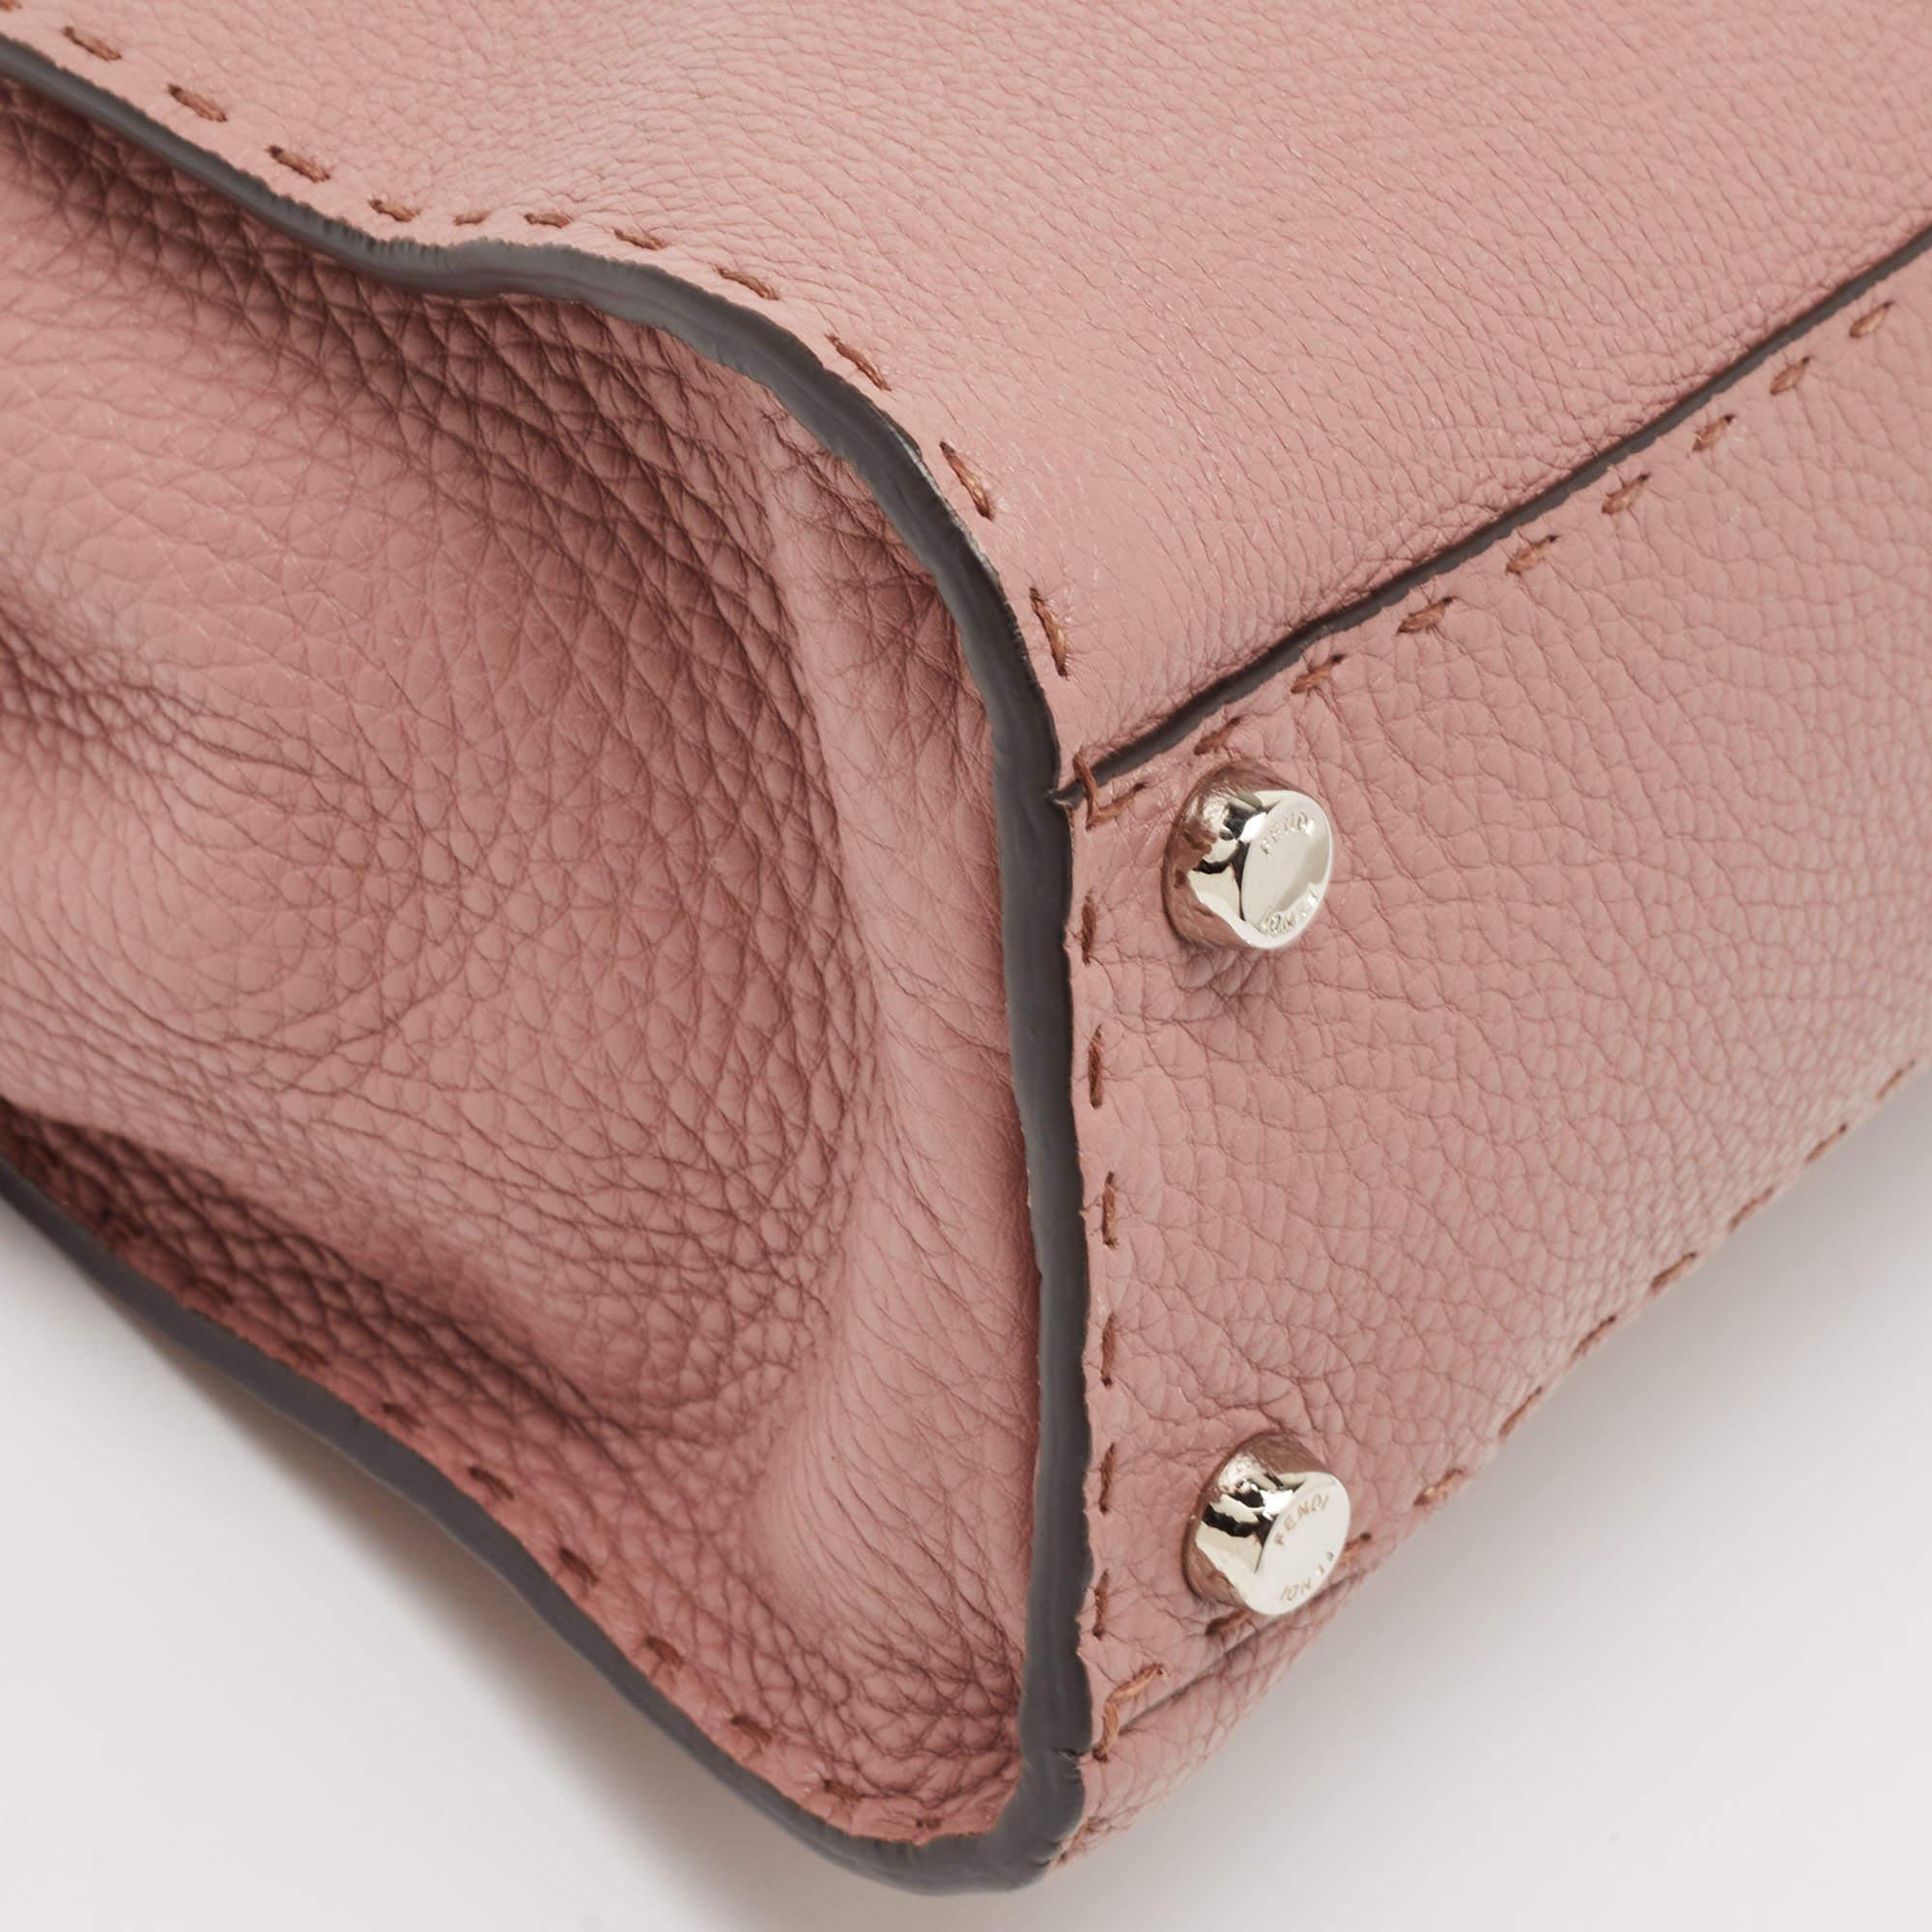 Fendi Old Rose Leather Medium Peekaboo Top Handle Bag 2